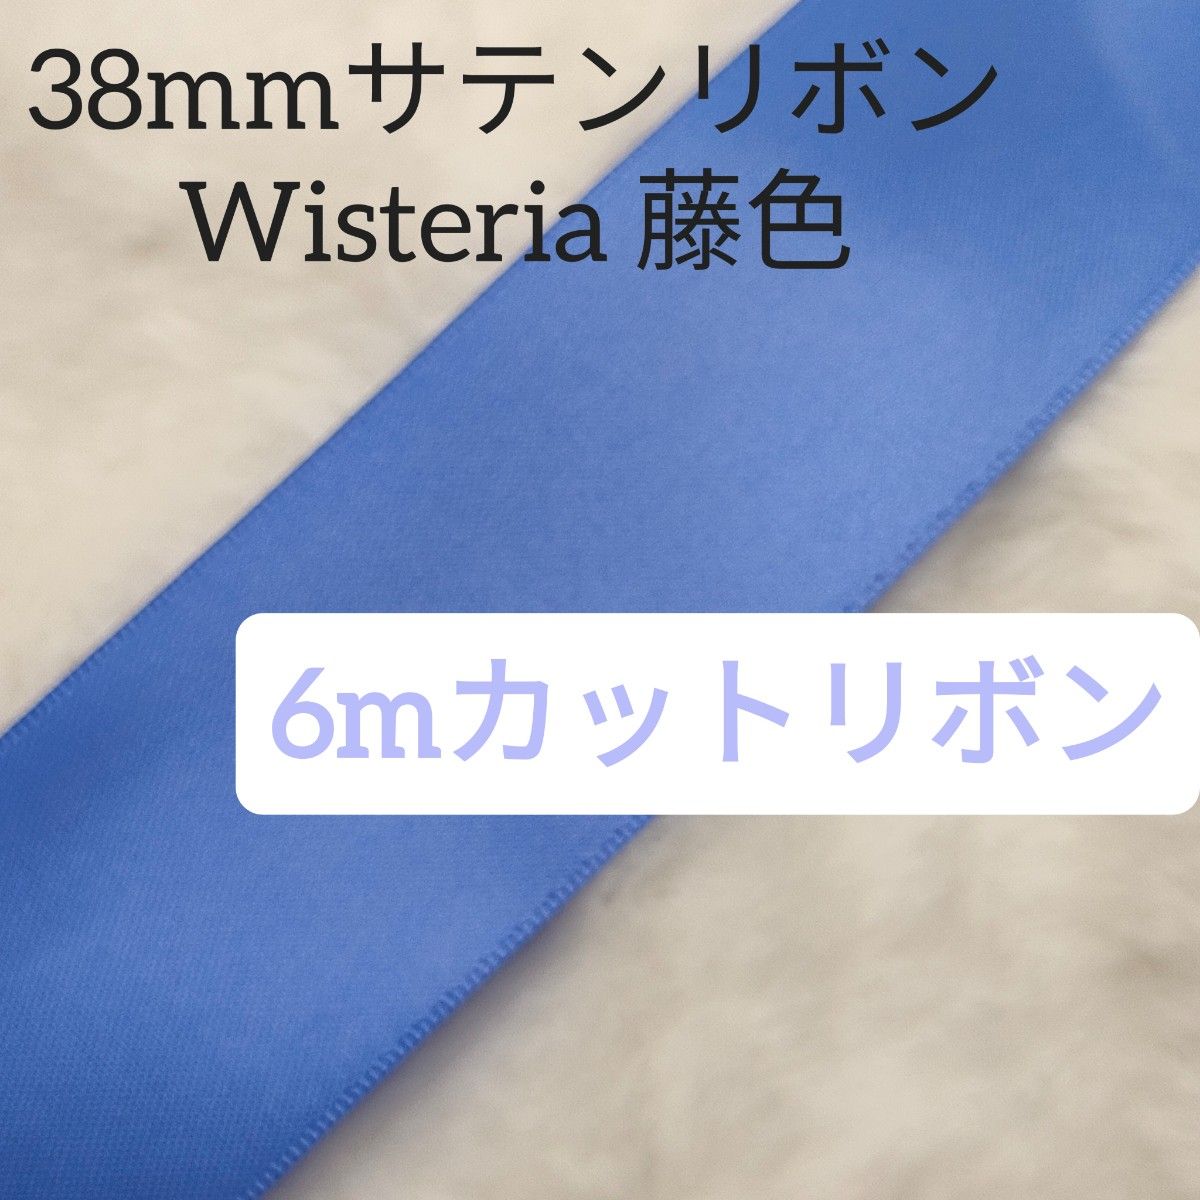 両面サテンリボン6mWisteria(藤色)色番号458/38mm幅ブルー系